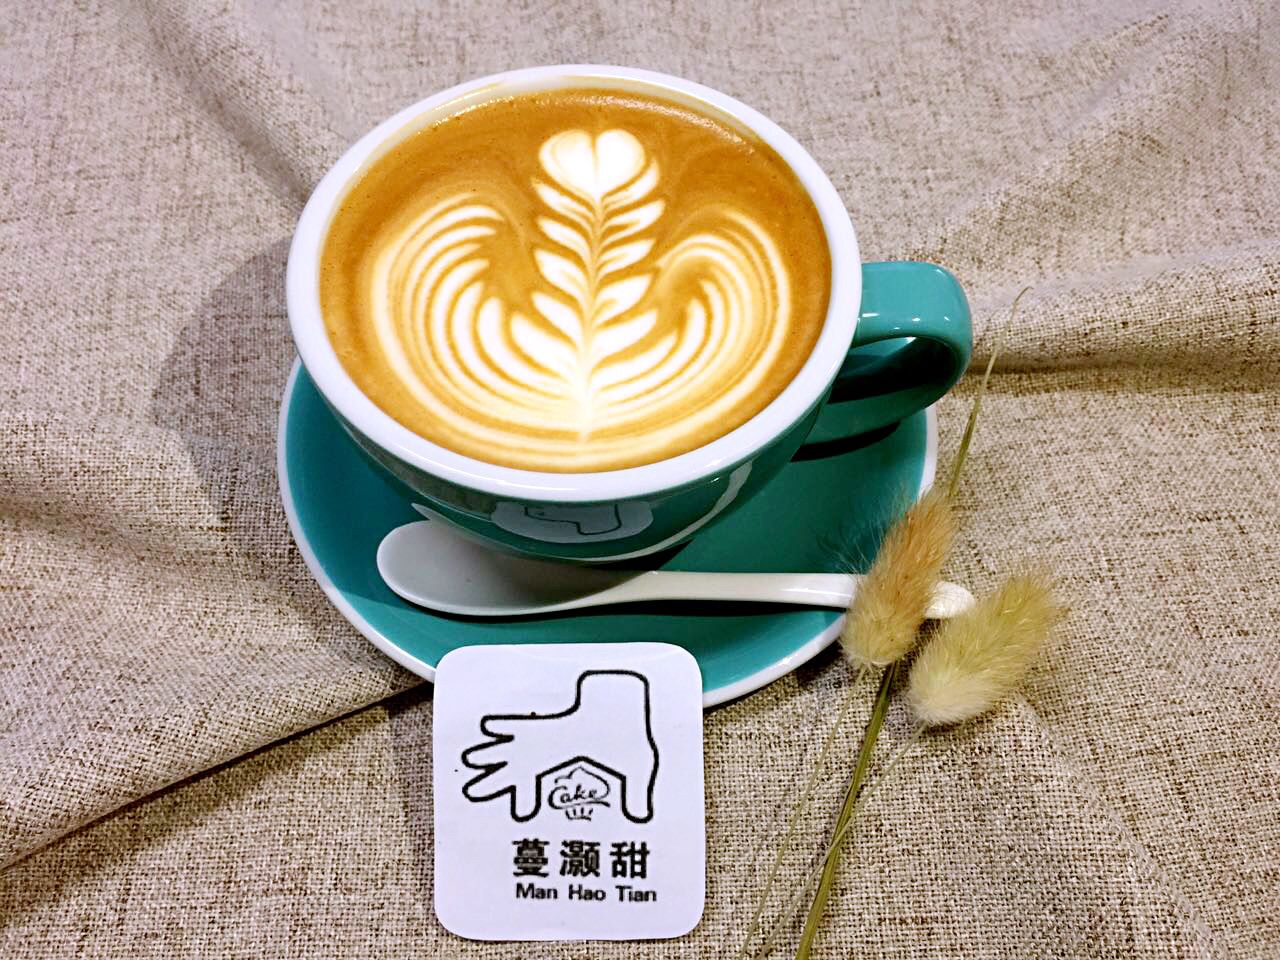 常州市咖啡培训 韩式裱花培训 烘焙培训厂家